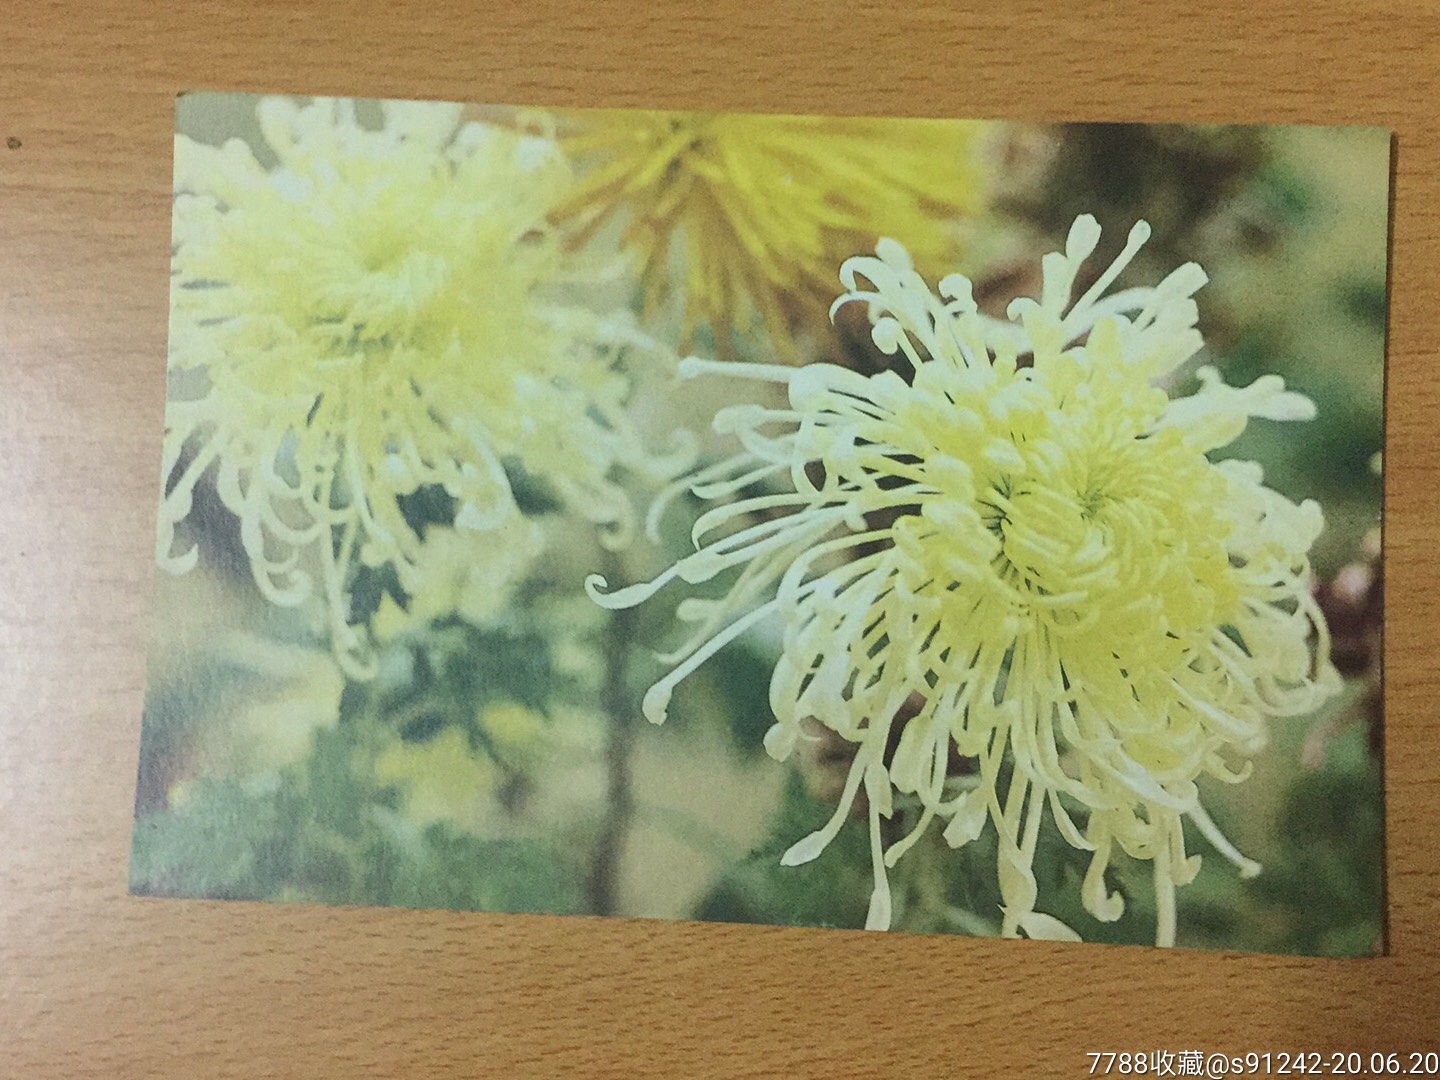 菊花植物卡片图片